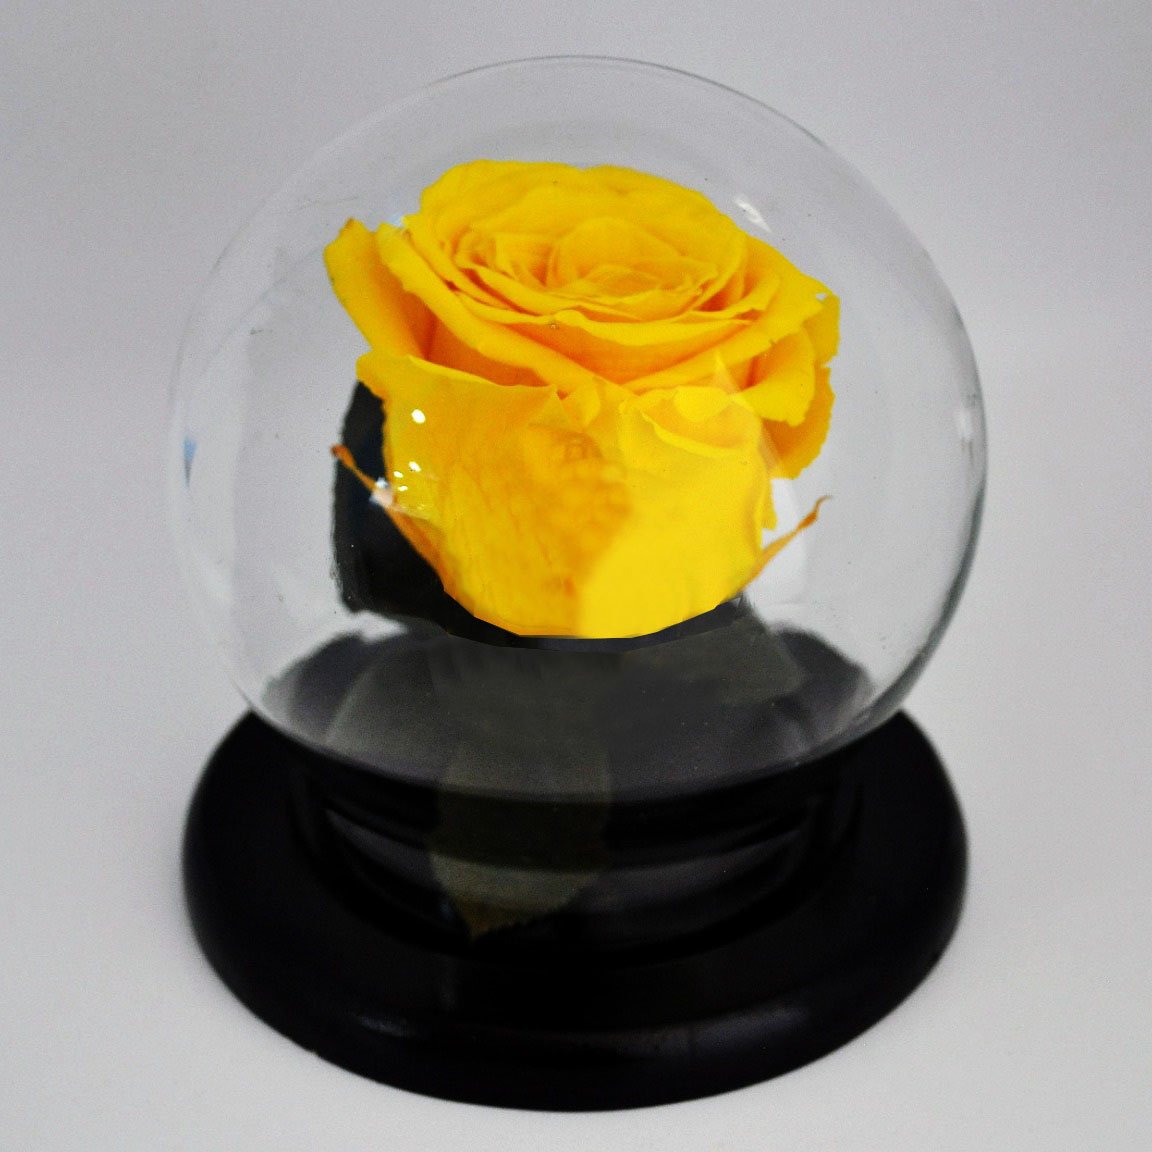 Preserved Medium Rose in a Dome